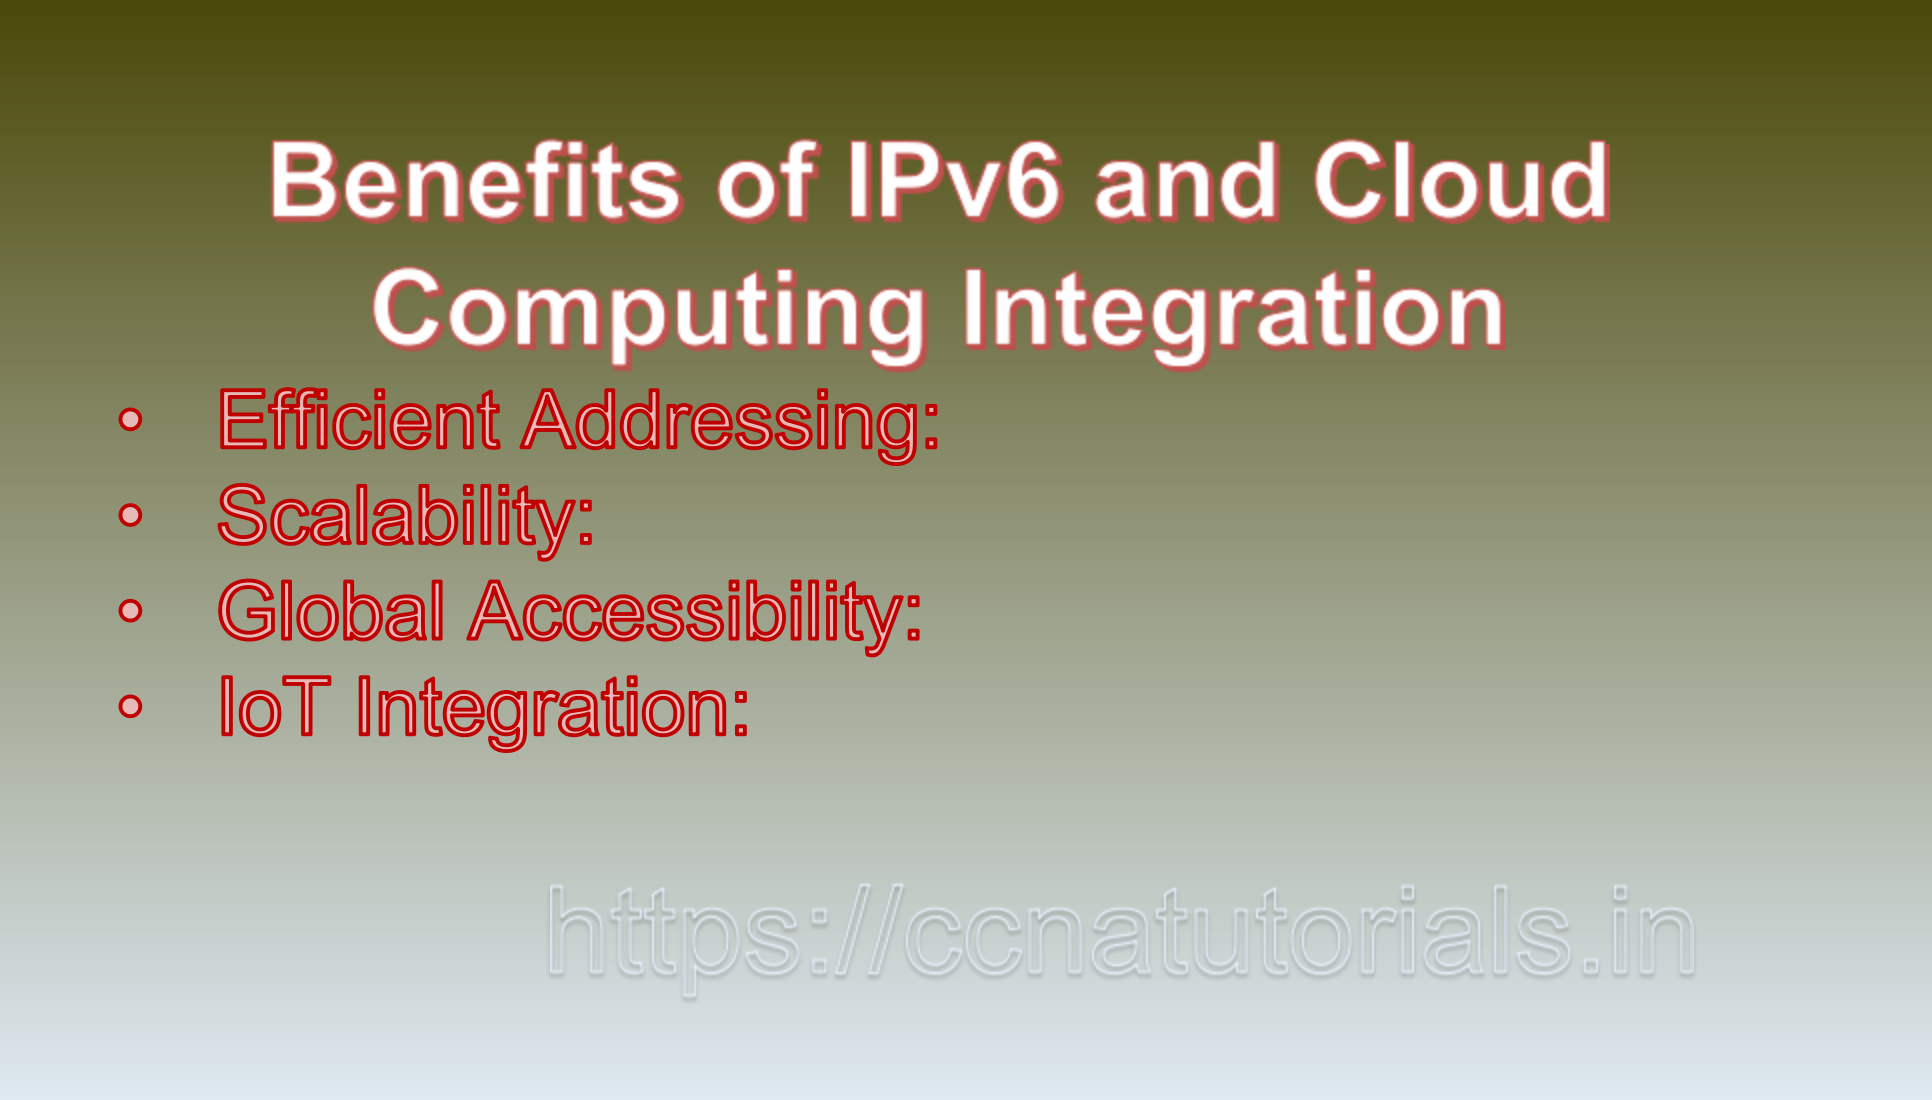  IPv6 and Cloud Computing, ccna, CCNA TUTORIALS